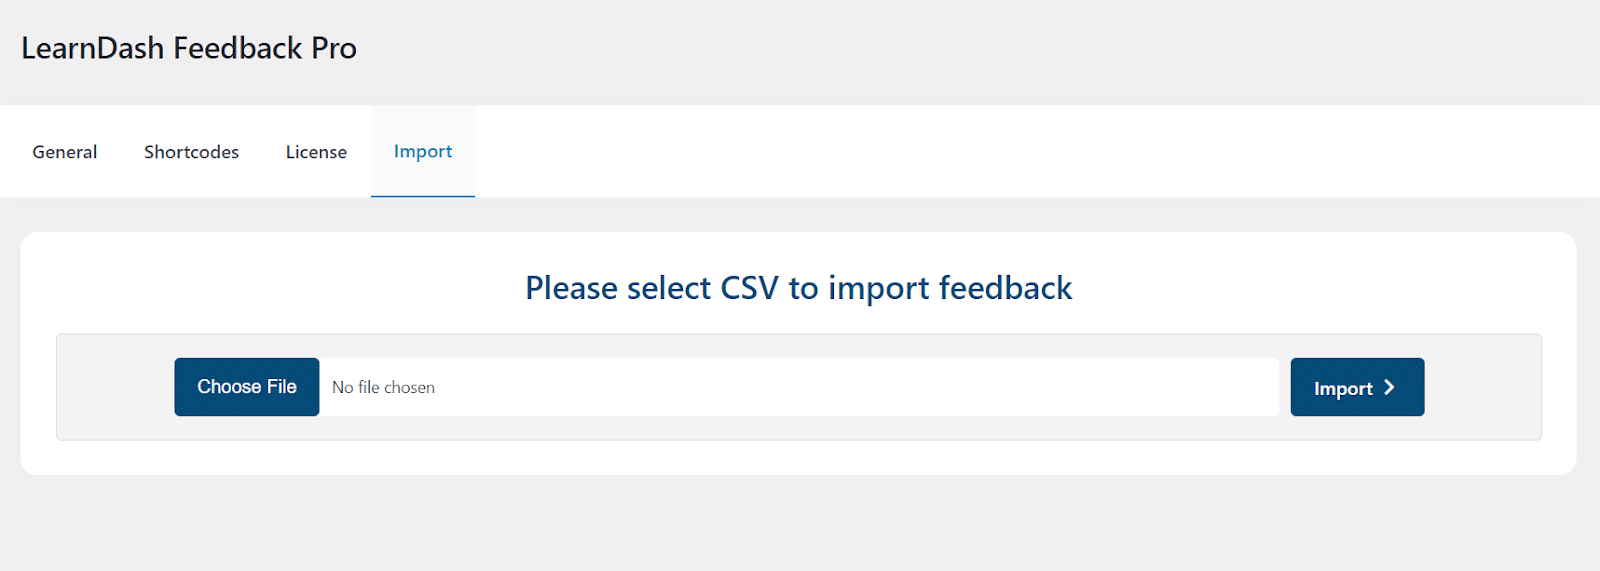 LearnDash feedback import in CSV